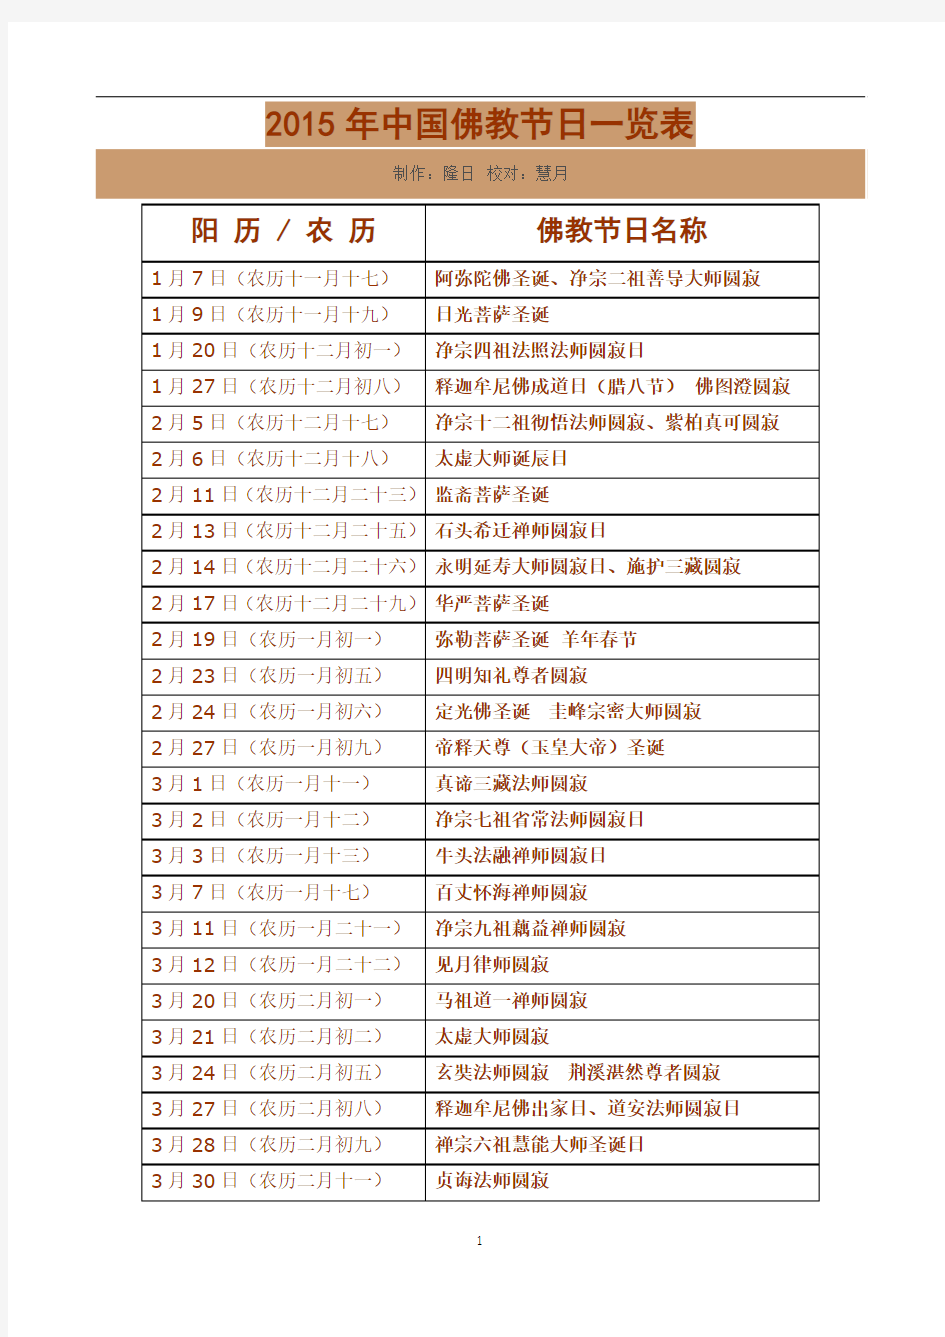 2015年中国佛教节日一览表